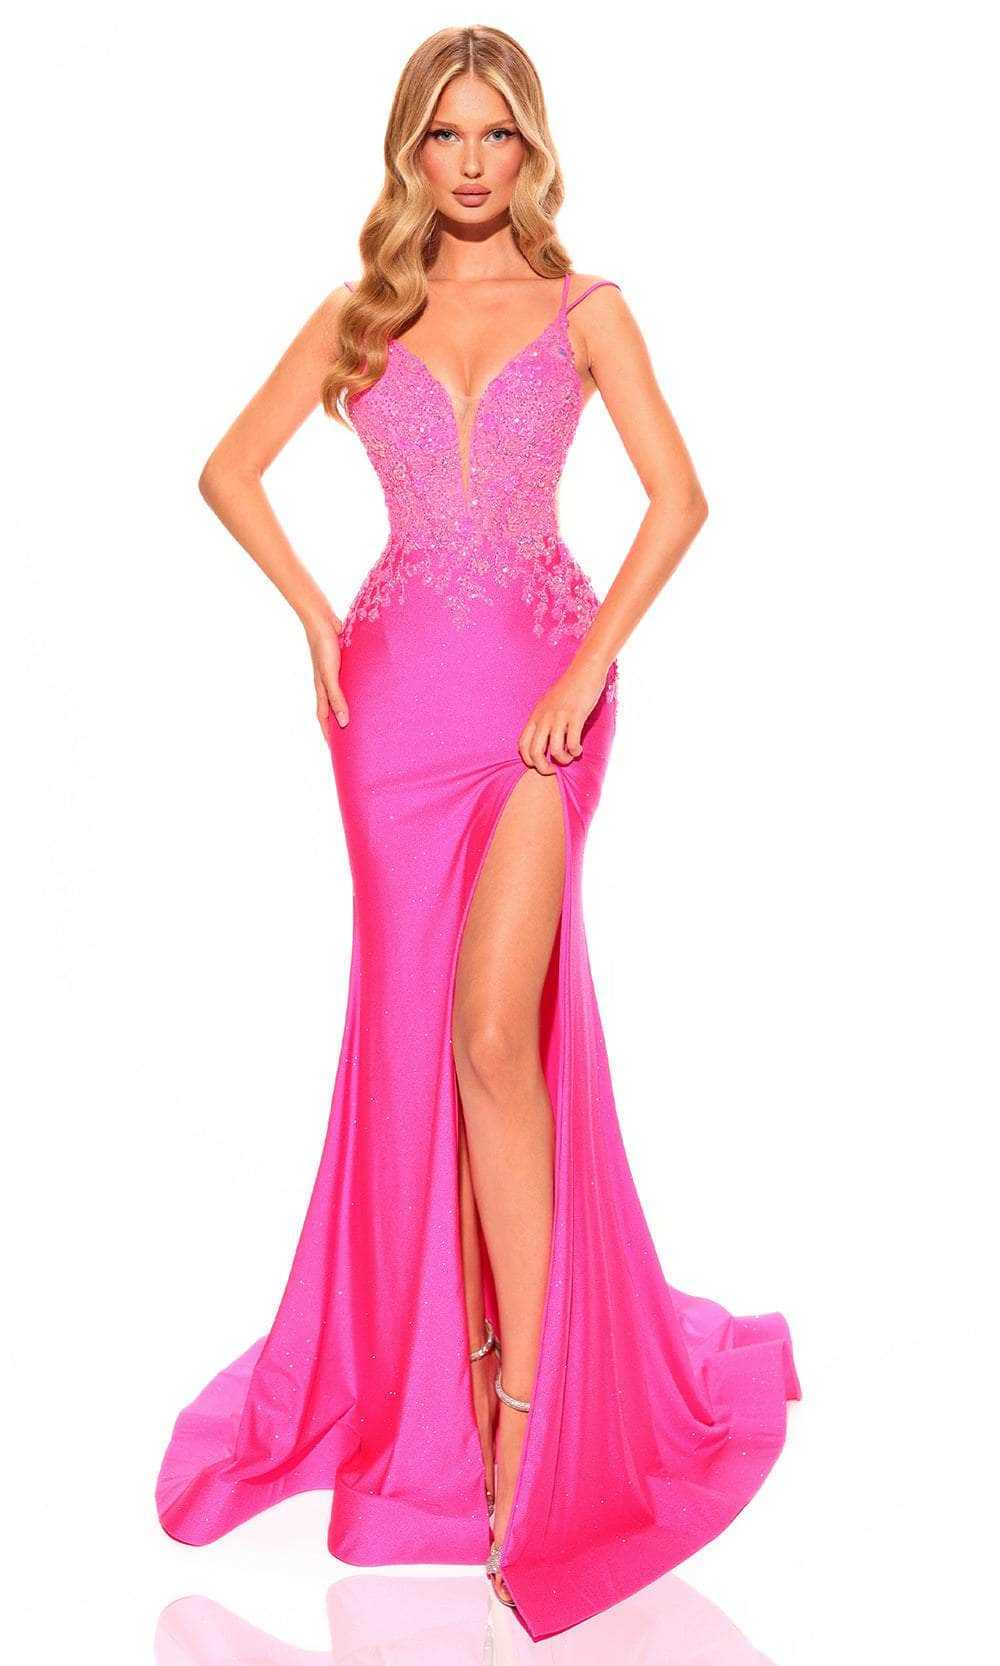 Amarra, Amarra 88747 - Embellished Bodice Prom Dress